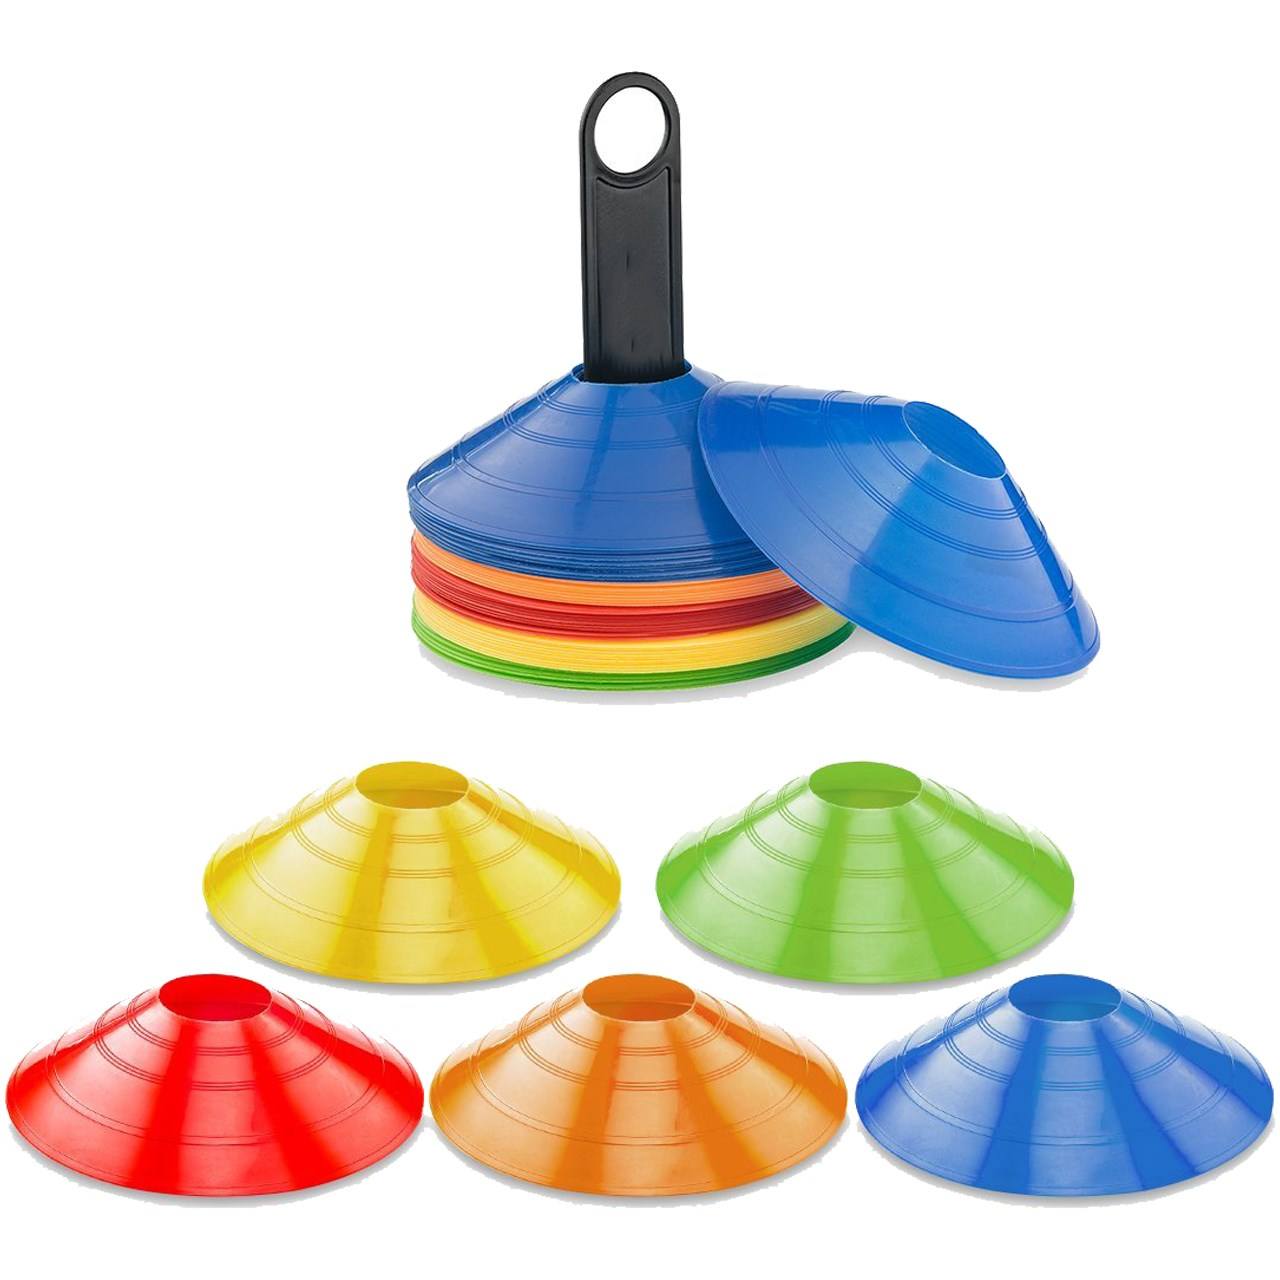 مانع تمرین مدل Training Cones 2019 در 4 رنگ مجموعه 20 عددی به همراه پایه نگهدارنده